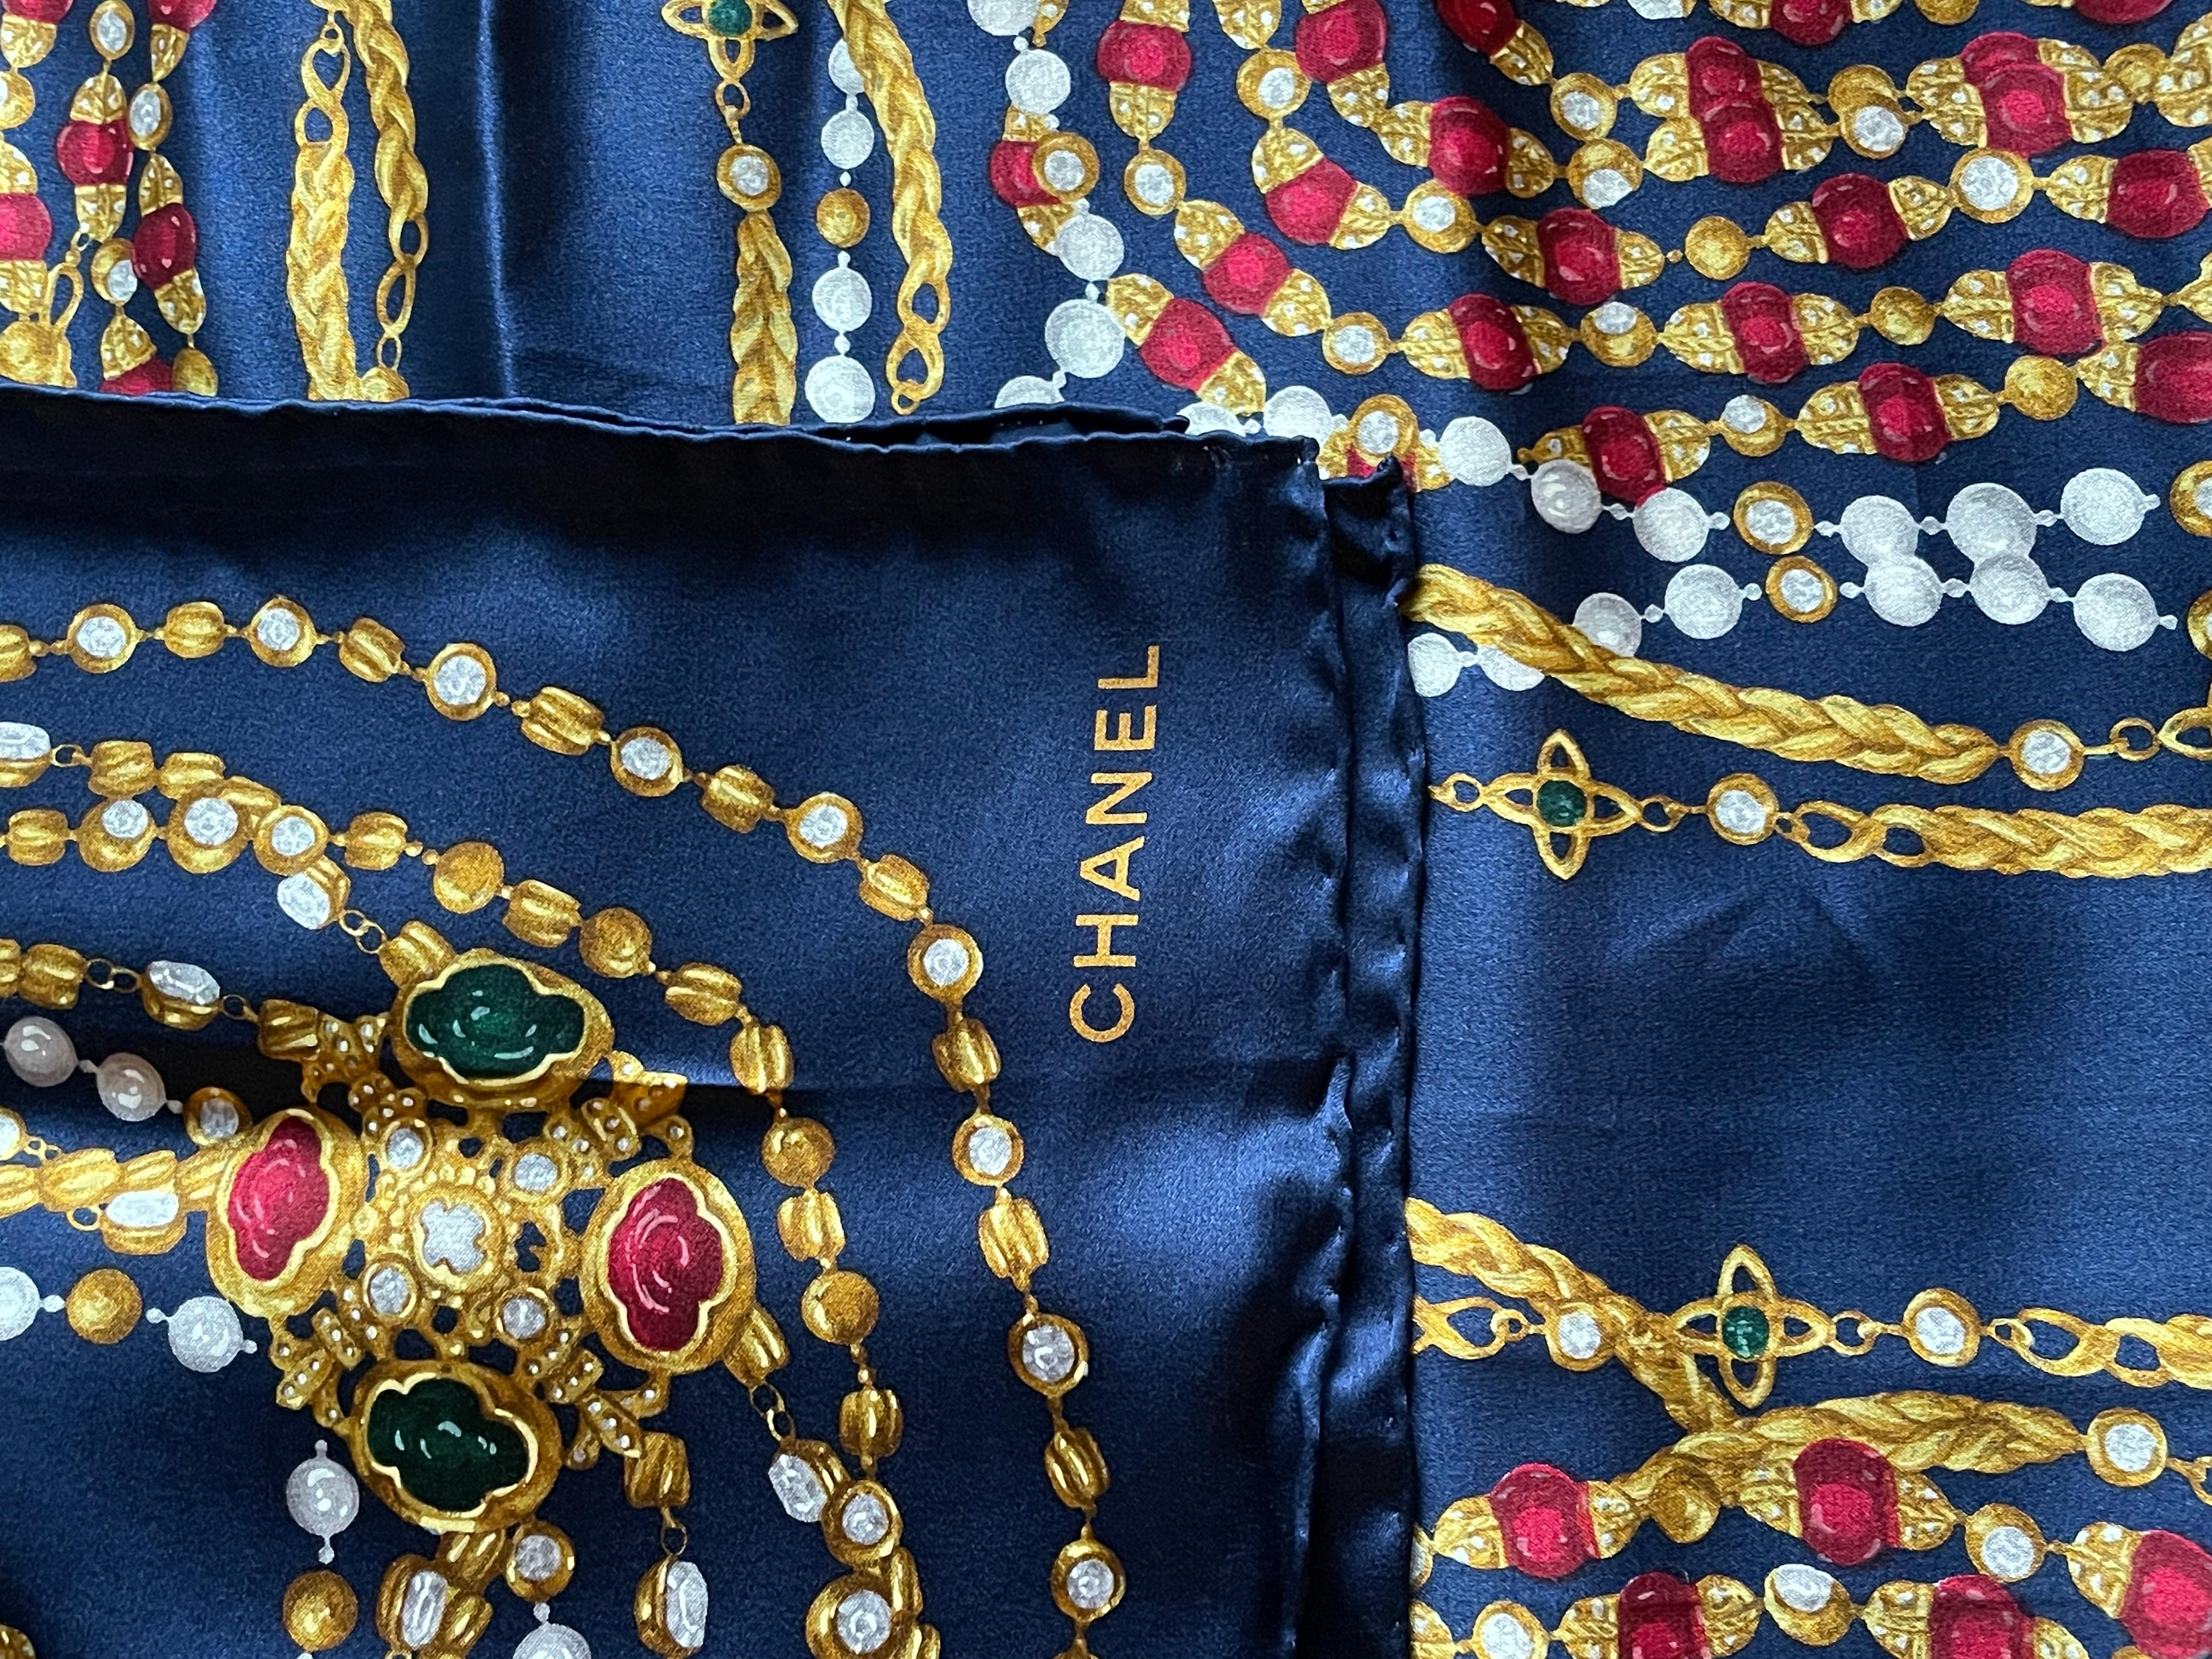 DÉTAILS

• signé CHANEL

• CC Chanel collier gripoix imprimé

• bleu marine avec des tons or, perle et bijou 

• foulard de créateur vintage

  100% soie  

MESURES  

• 34